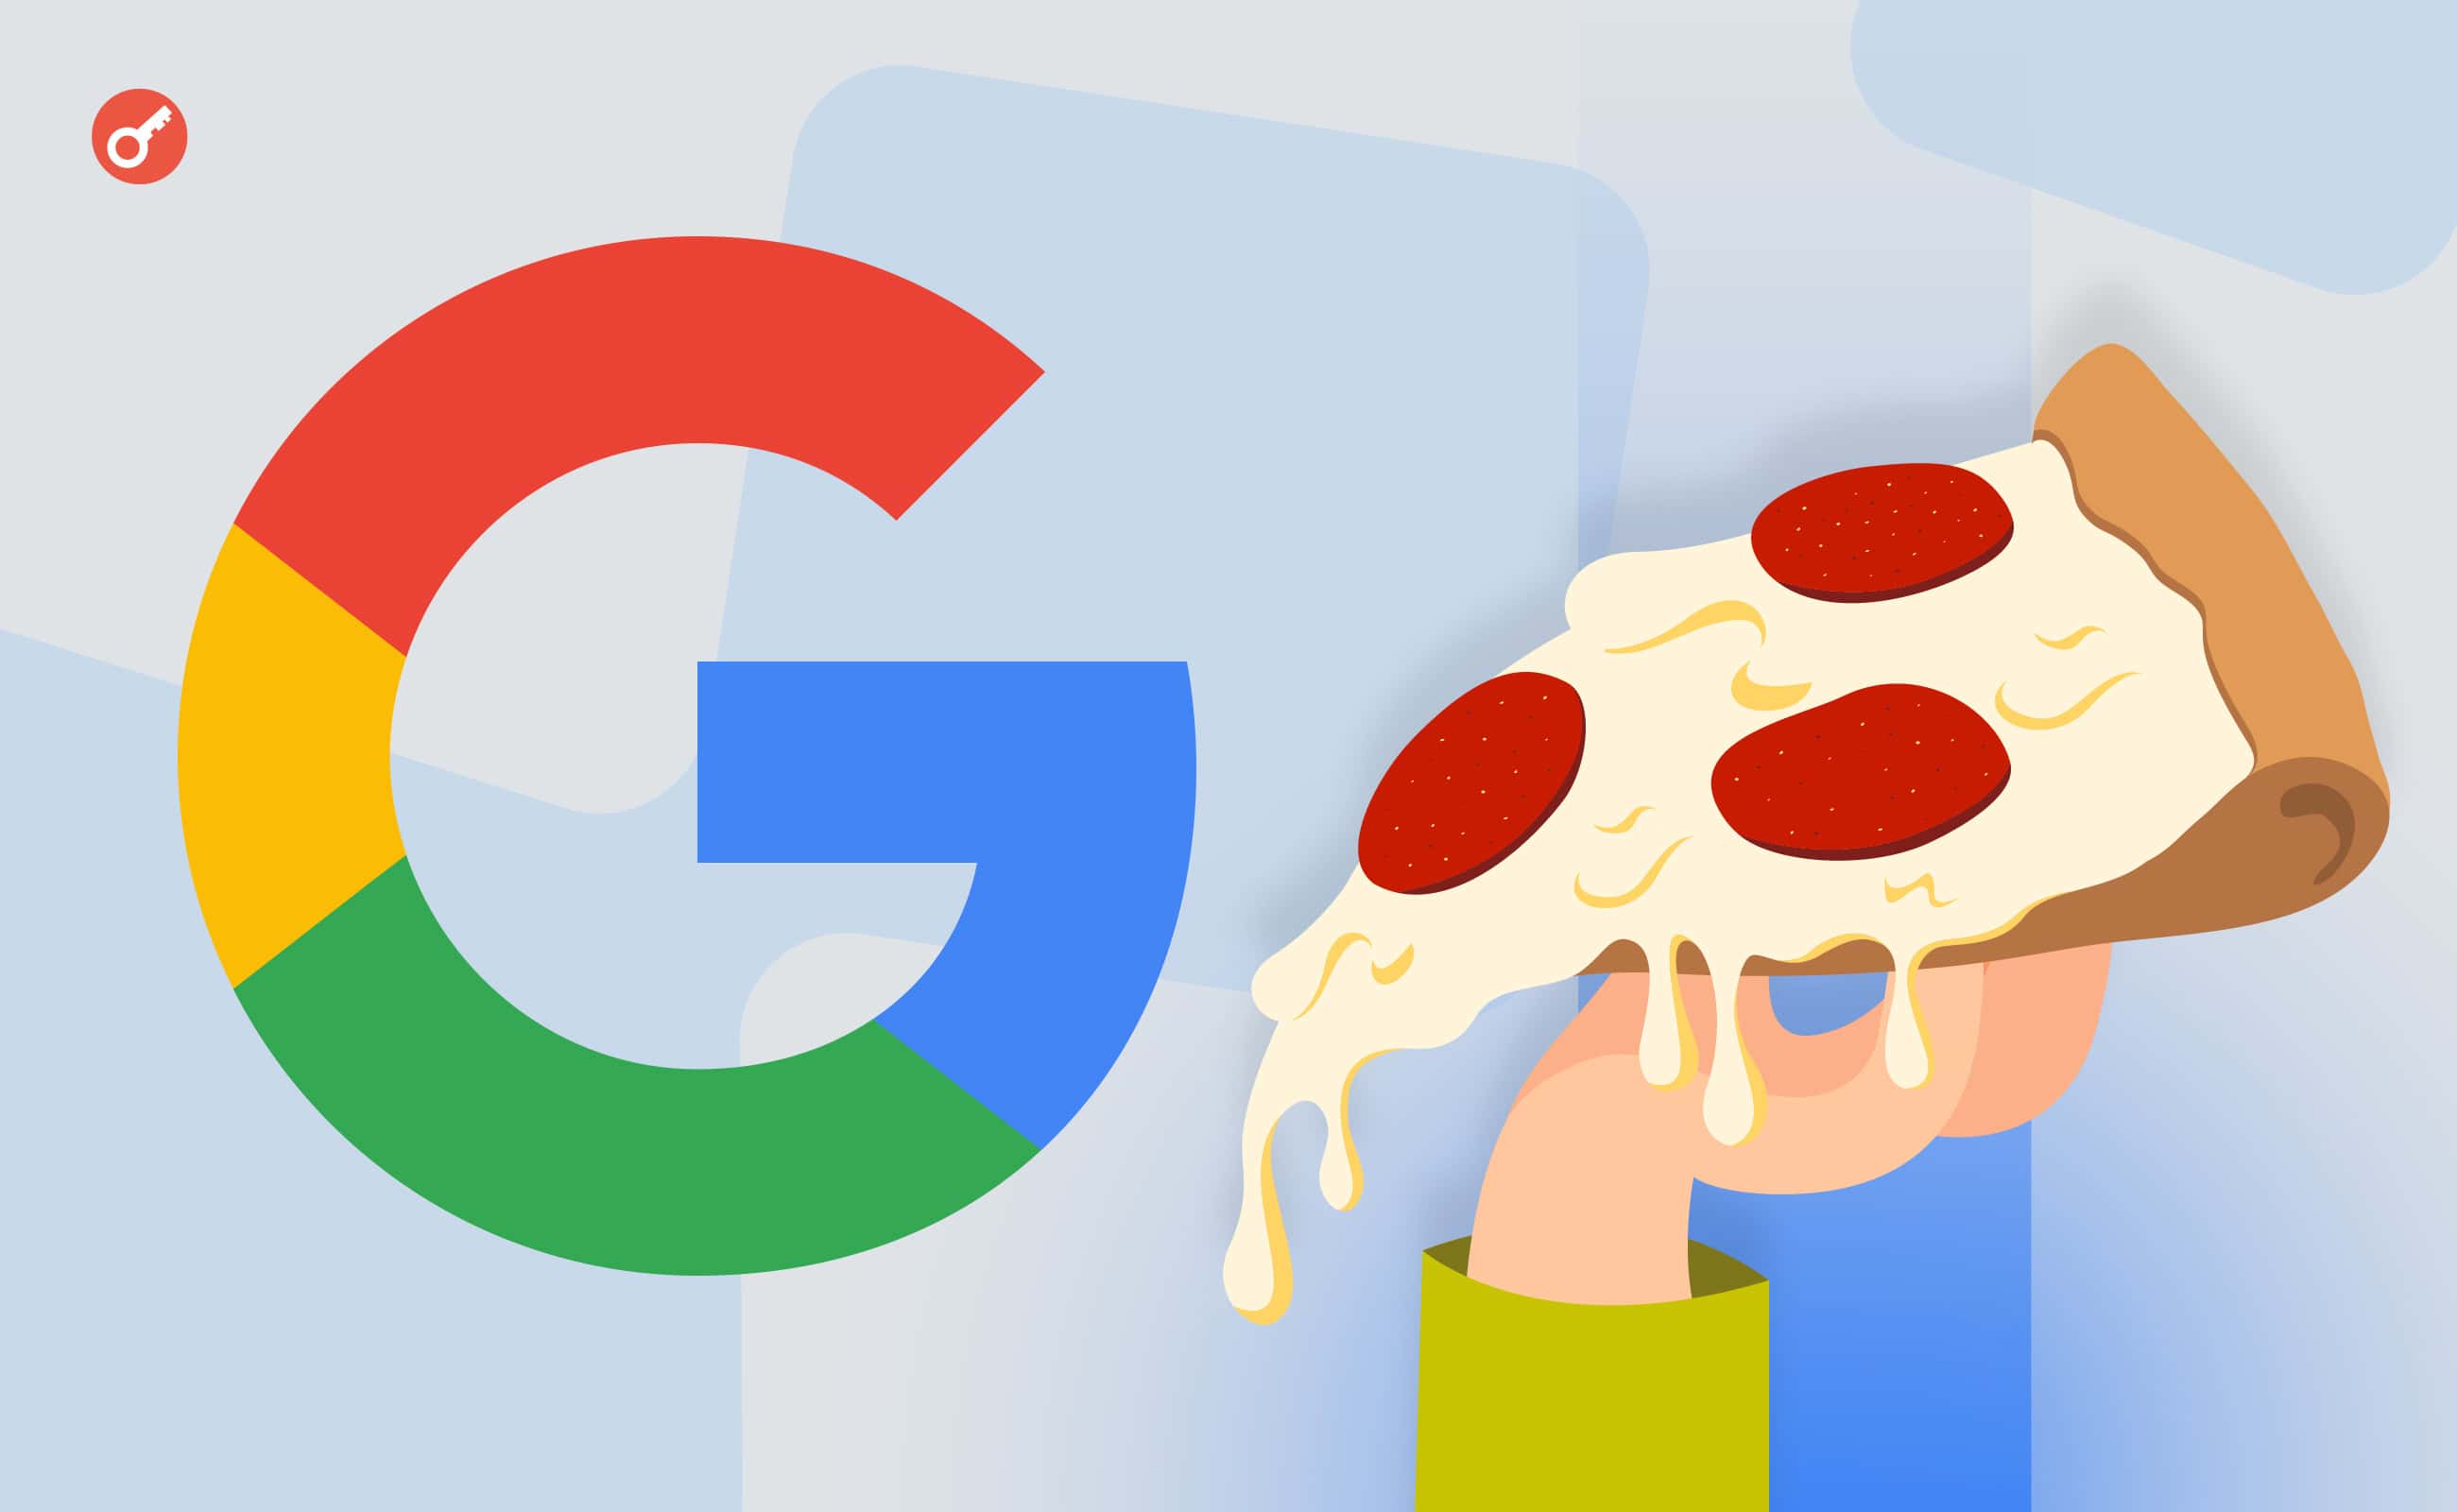 ШІ Google-пошуковика порадив намазати піцу клеєм